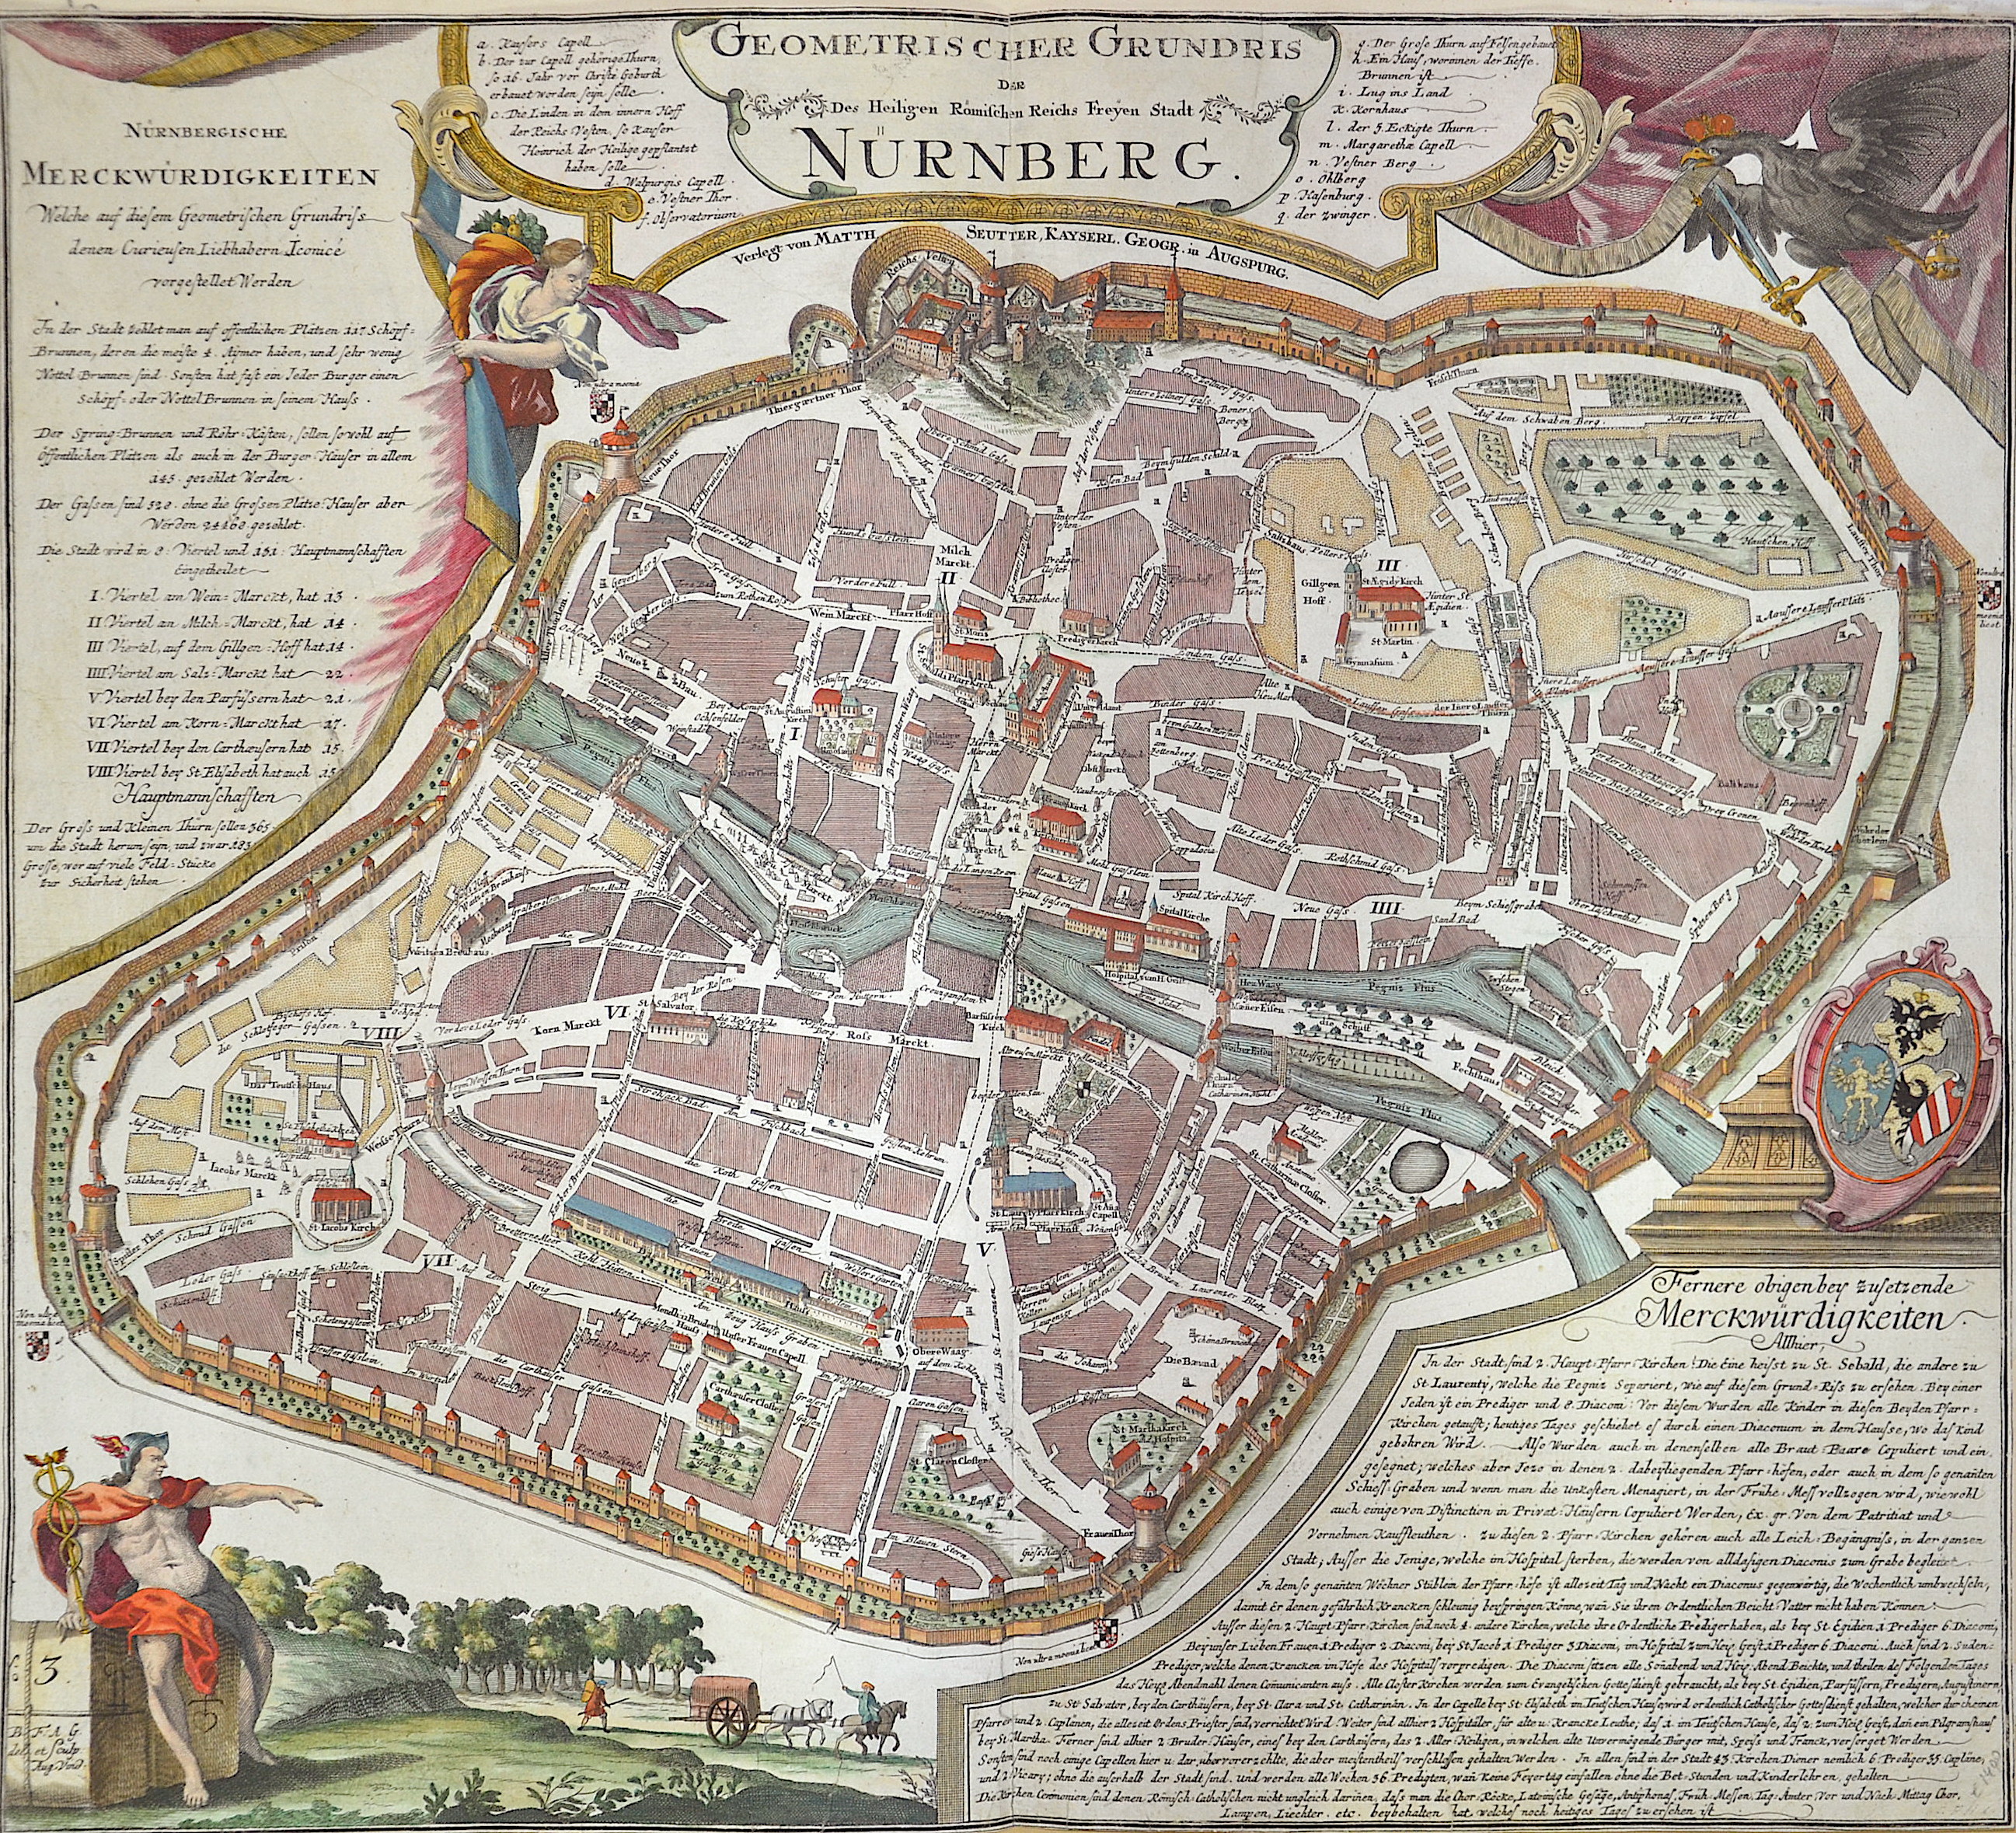 Seutter Matthias Geometris Cher Grundris der Des Heiligen Römischen Reichs Freyen Stadt Nürnberg.